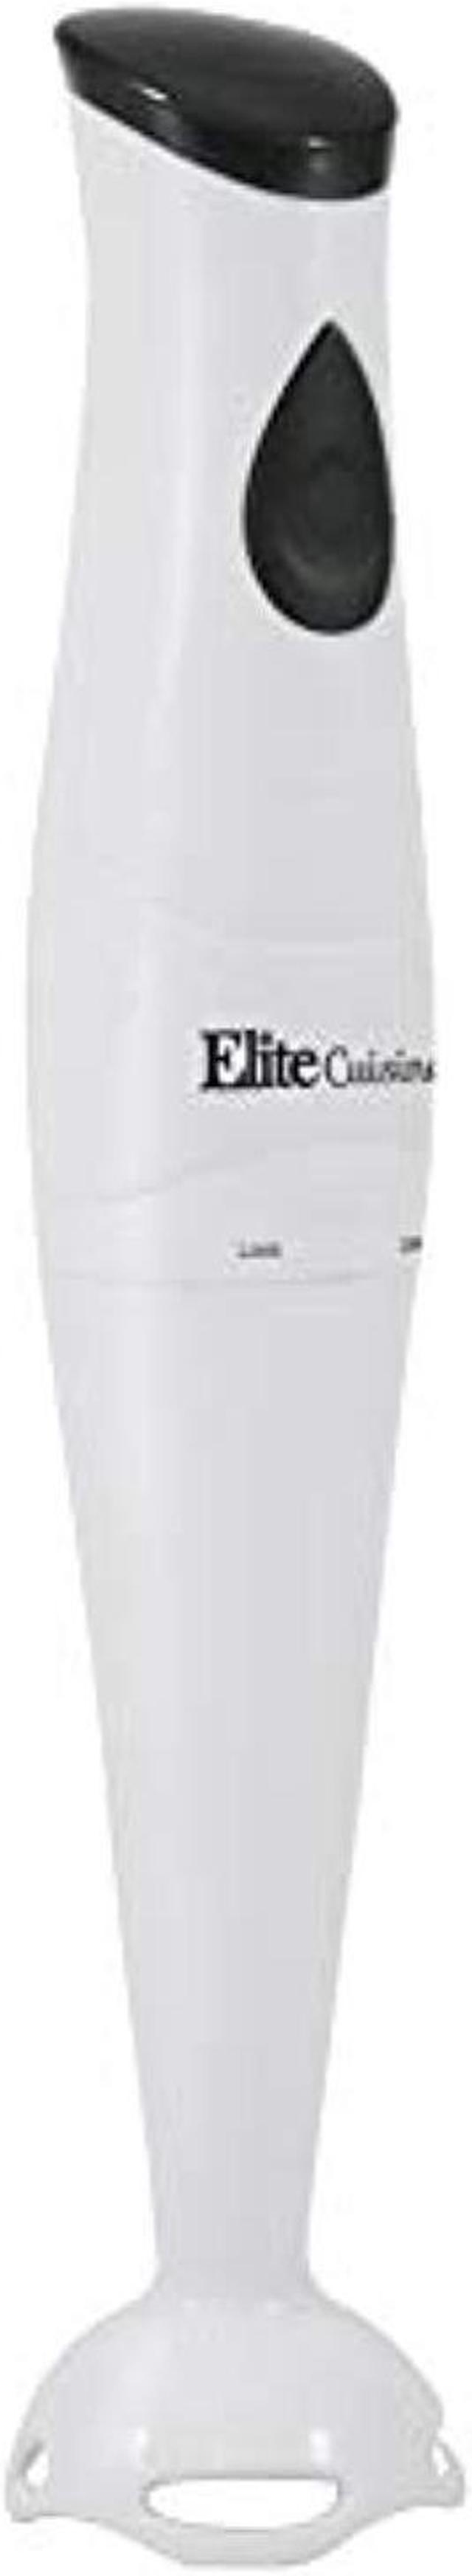 Elite Cuisine Ehb-2425x White Hand Blender with Detachable